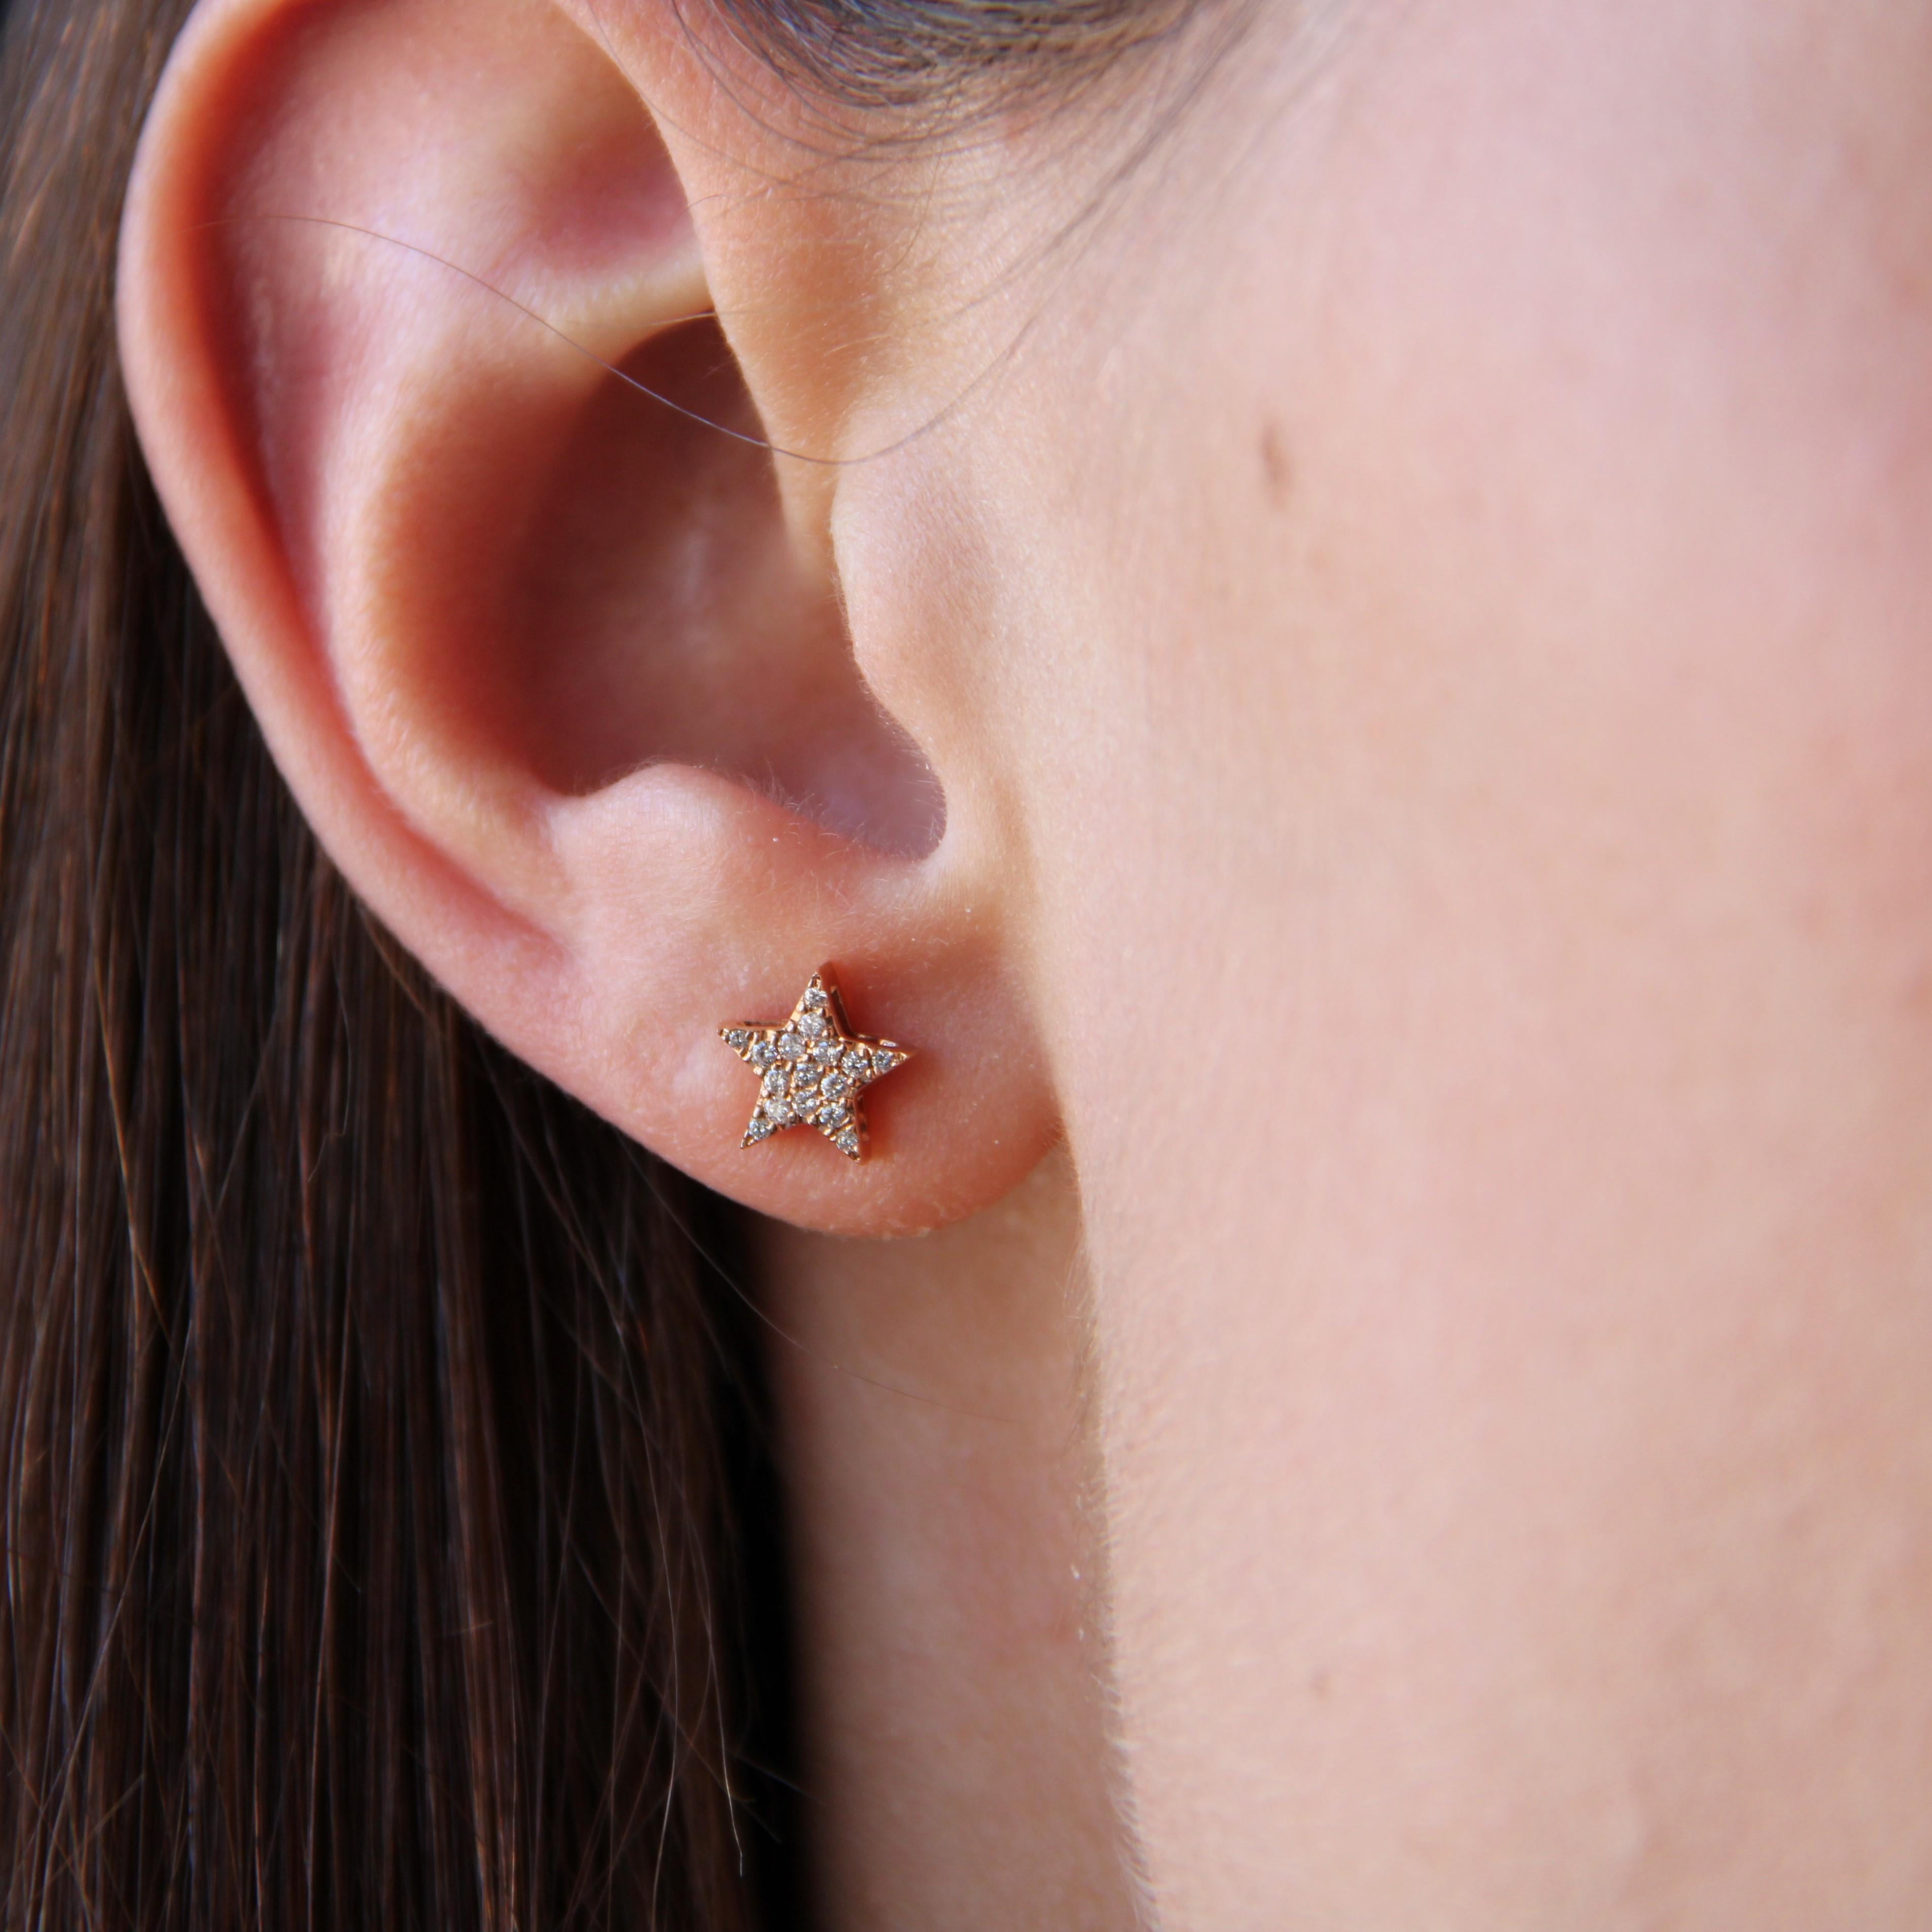 Für gepiercte Ohren.
Ohrringe aus 18 Karat Roségold.
Sternförmige Ohrringe, jeder mit kleinen, modernen Brillanten besetzt, die in Perlen gefasst sind. Die Schließe ist ein Schmetterling.
Gesamtgewicht der Diamanten: ca. 0,15 Karat.
Höhe: ca. 8 mm,